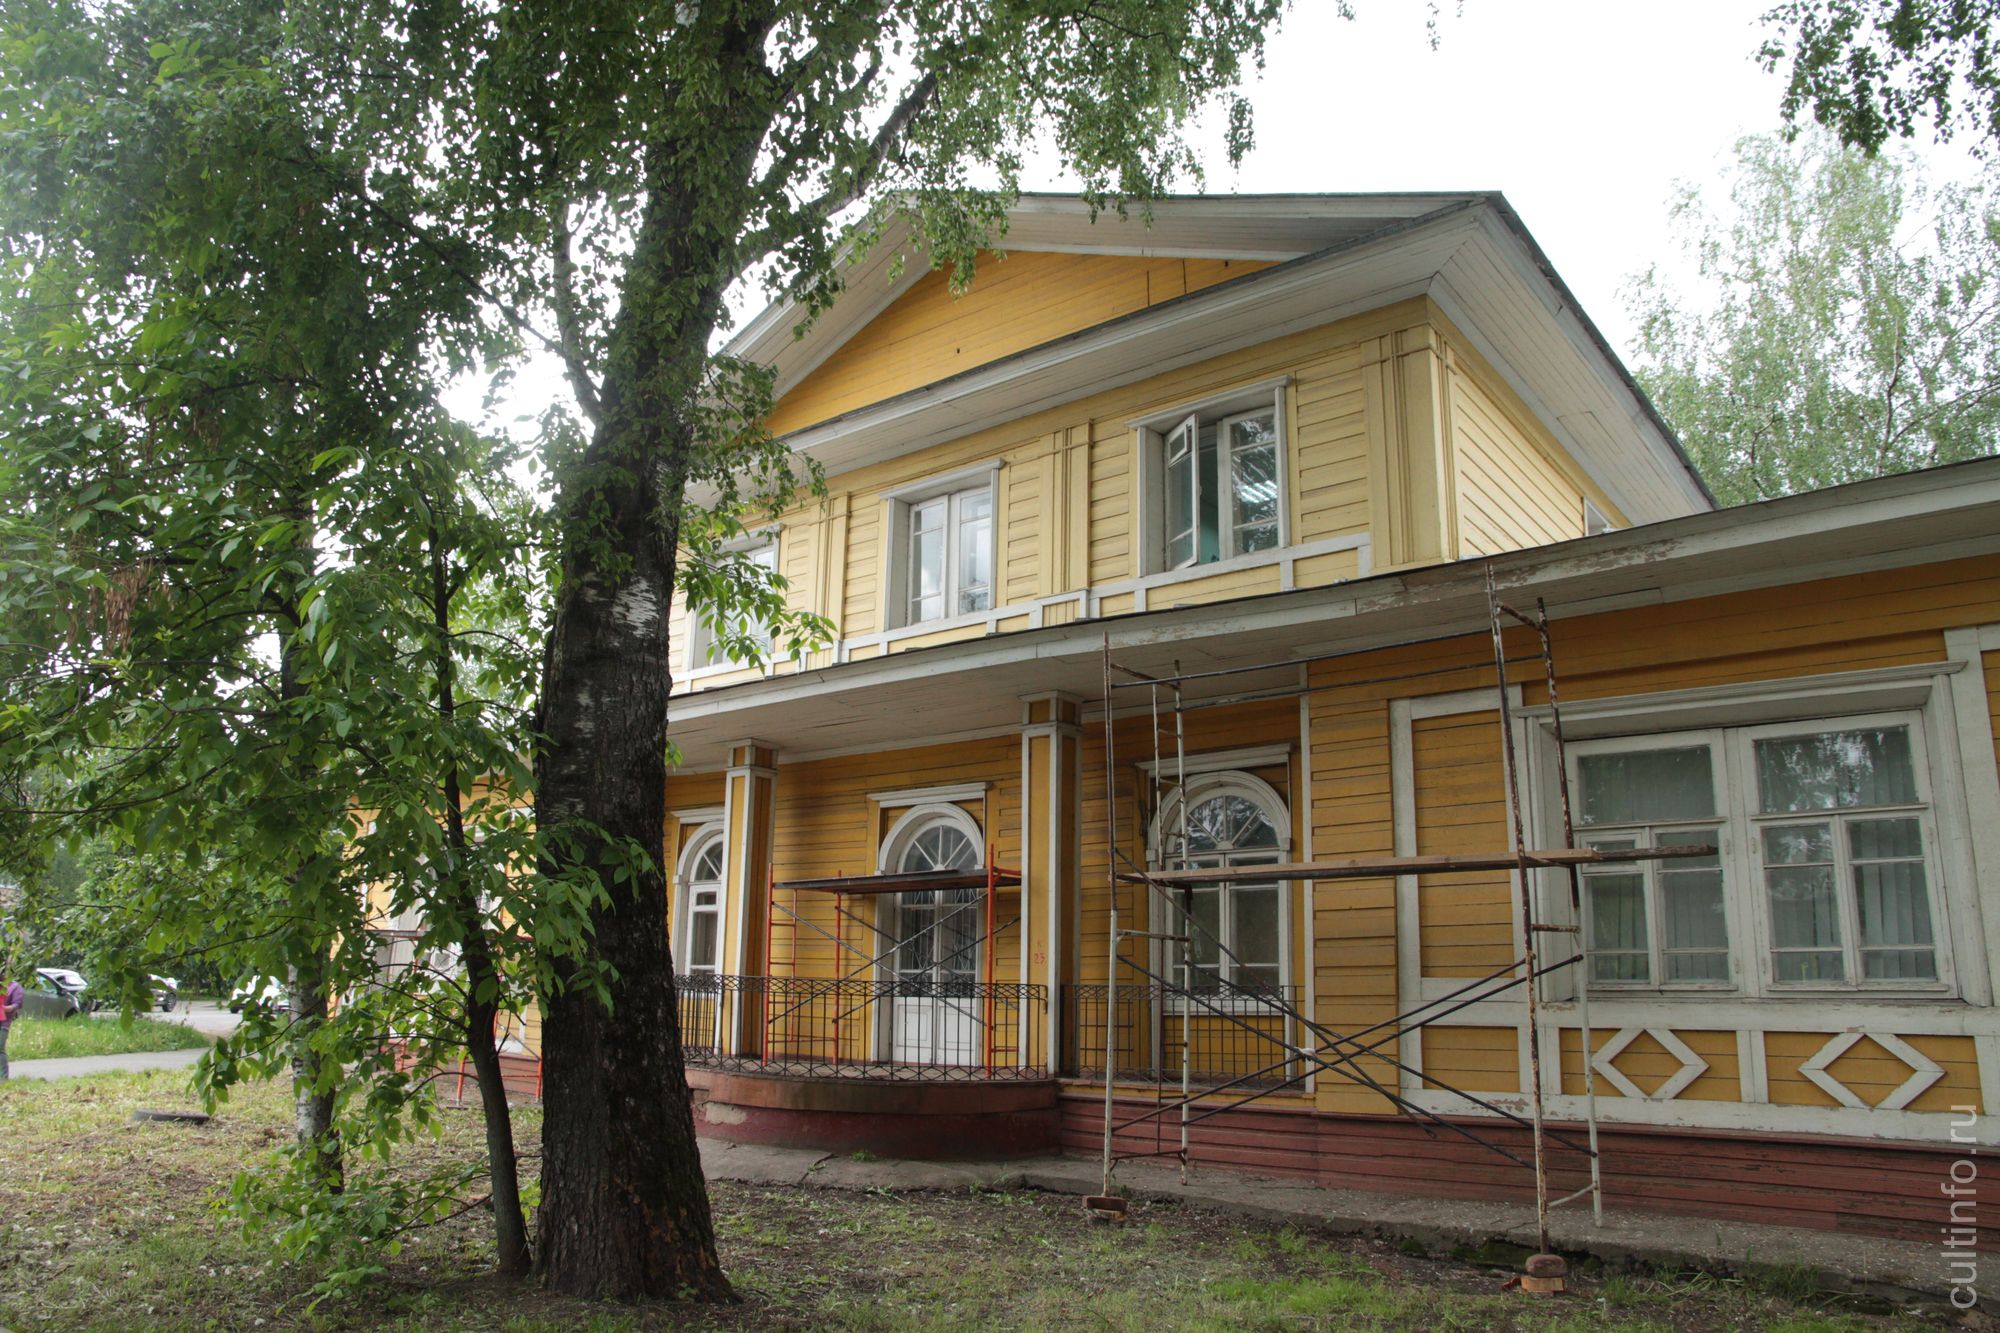 Фасад основного дома Дружинина в Вологде покрасят сотрудники и курсанты ФСИН